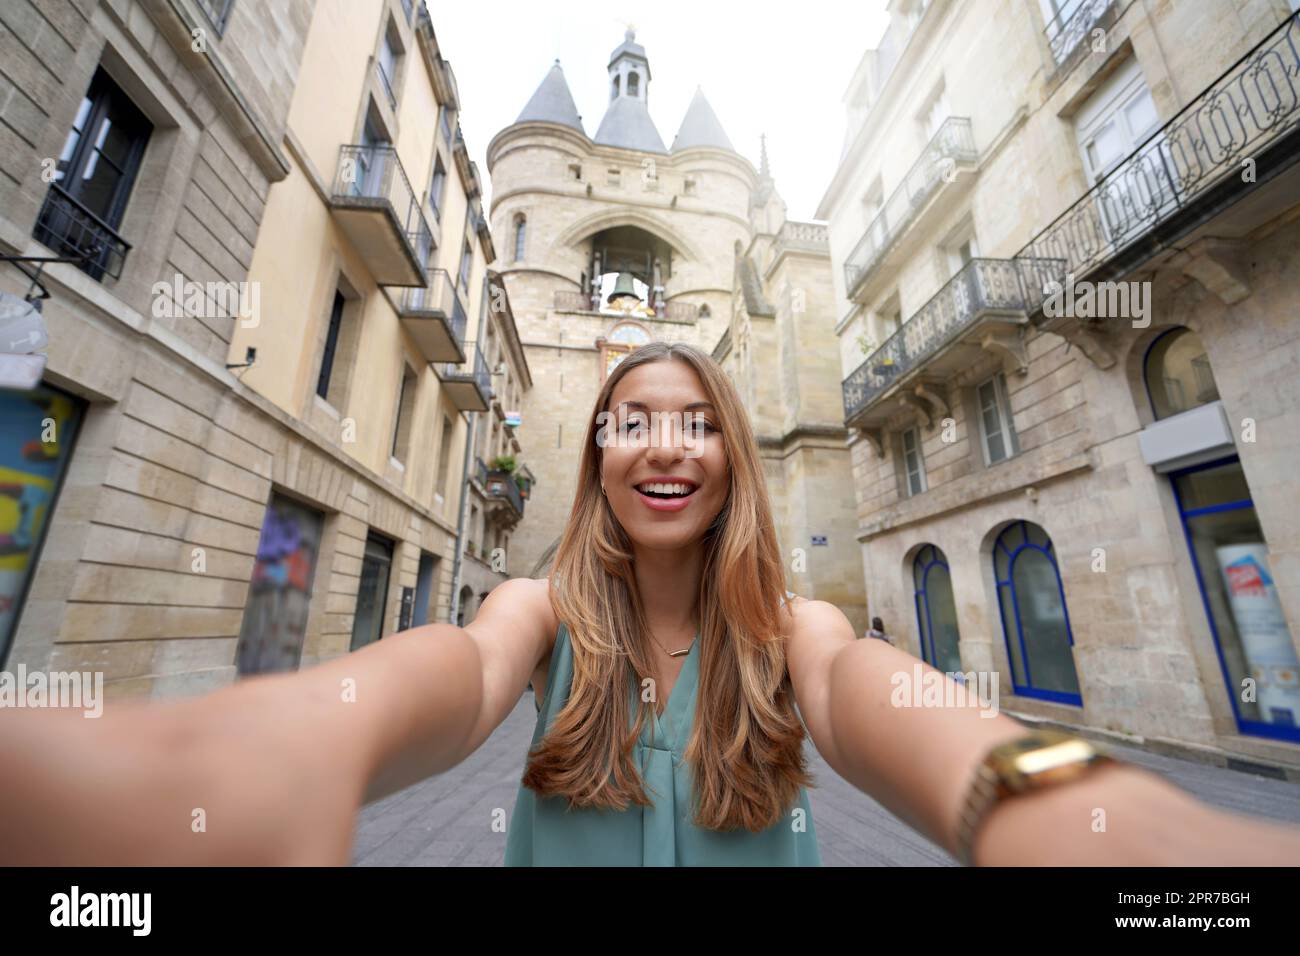 Autoritratto di giovane donna turistica sorridente a macchina fotografica con la Grosse cloche storico campanile a Bordeaux, Francia Foto Stock